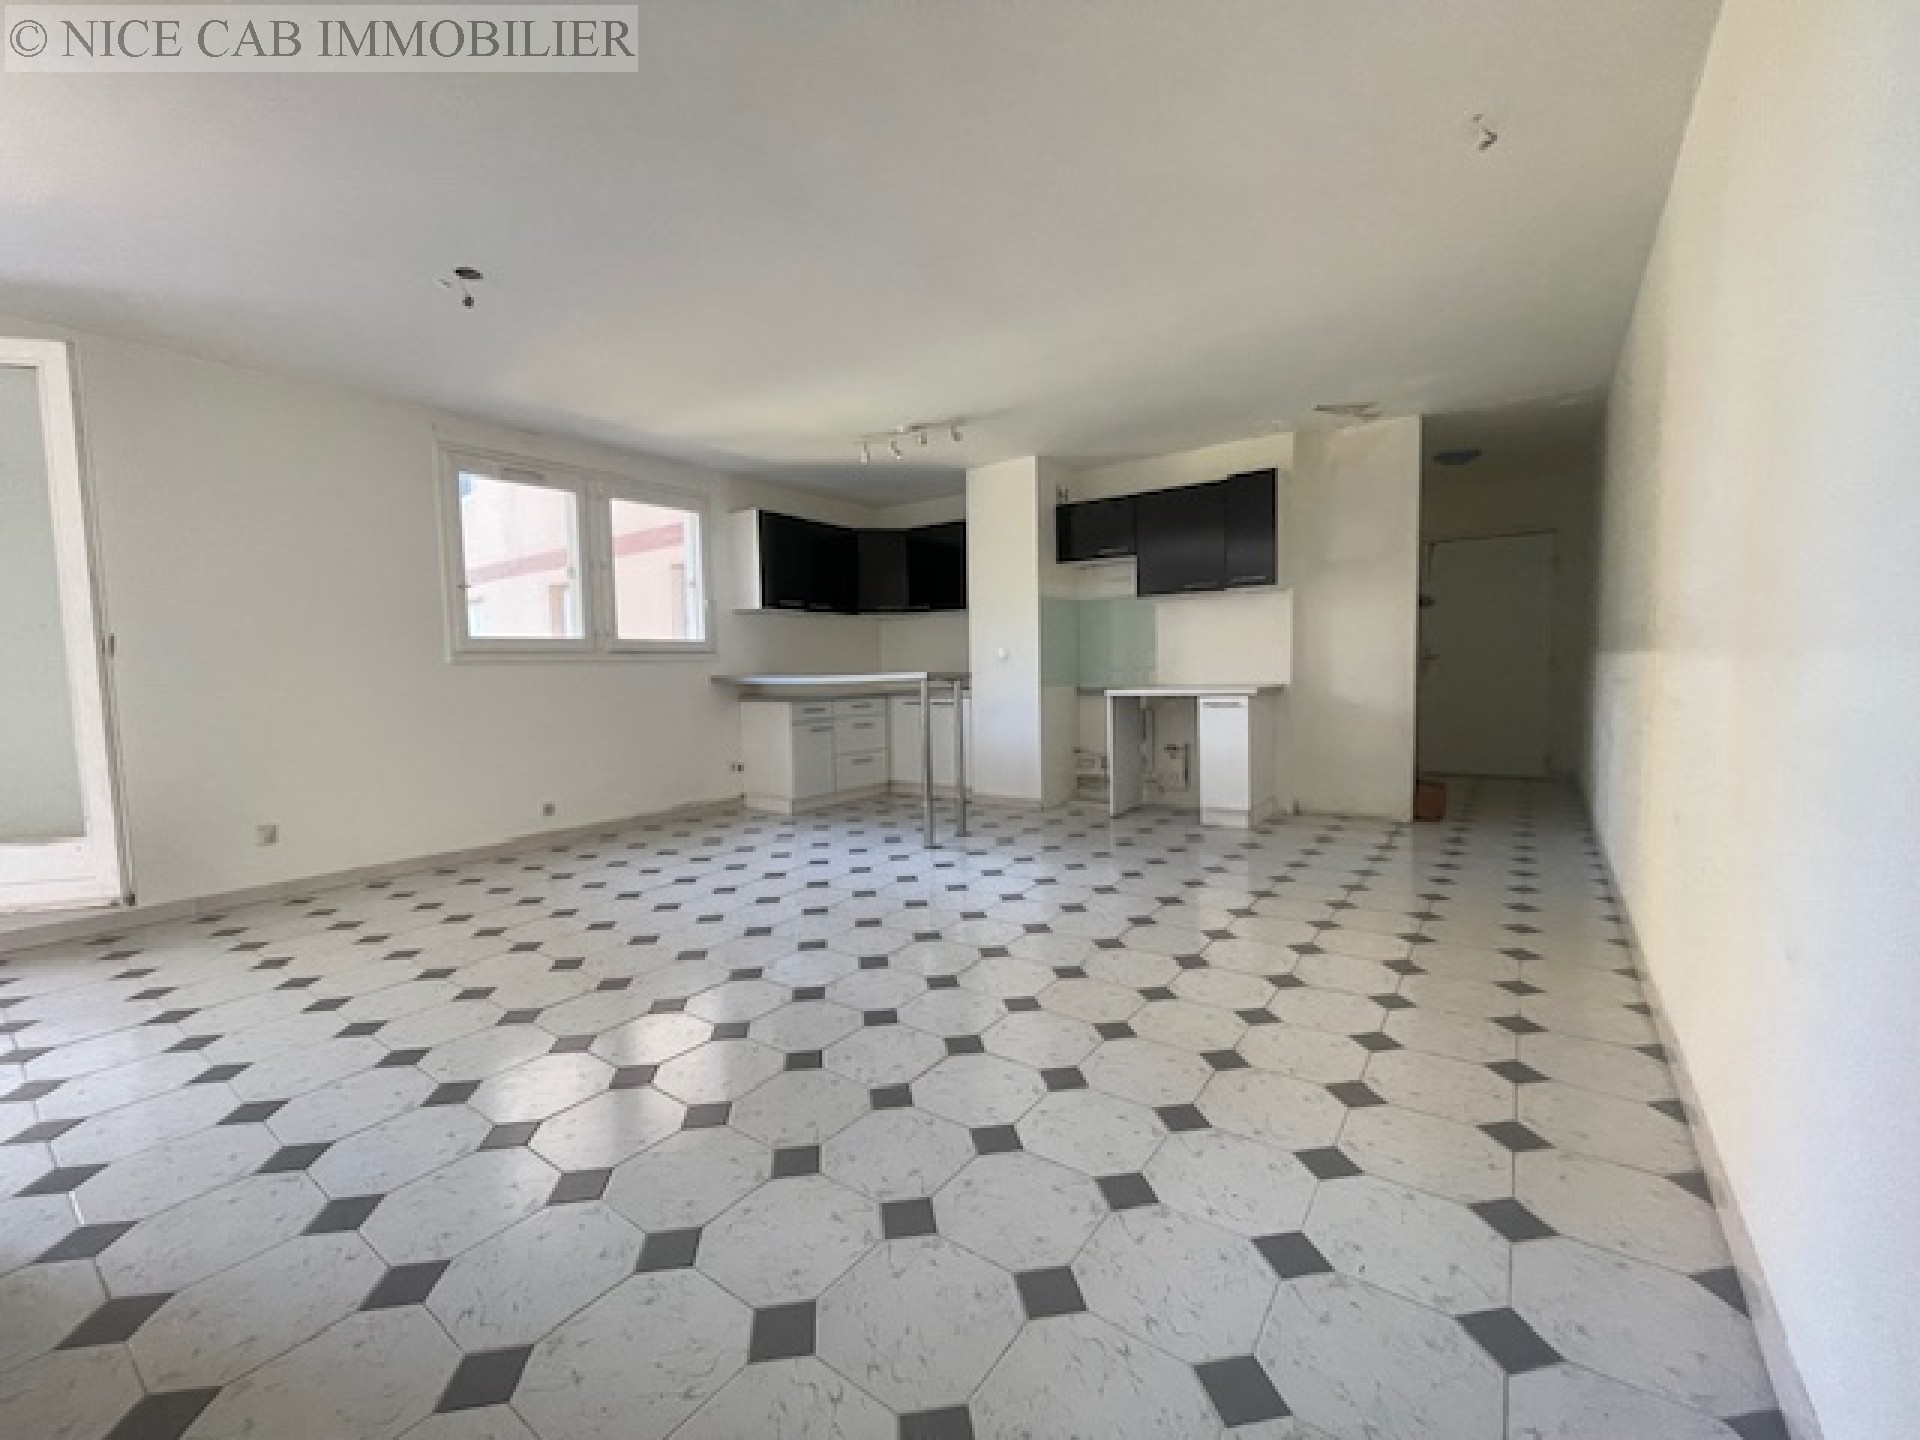 Appartement à vendre, MENTON, 74 m², 3 pièces